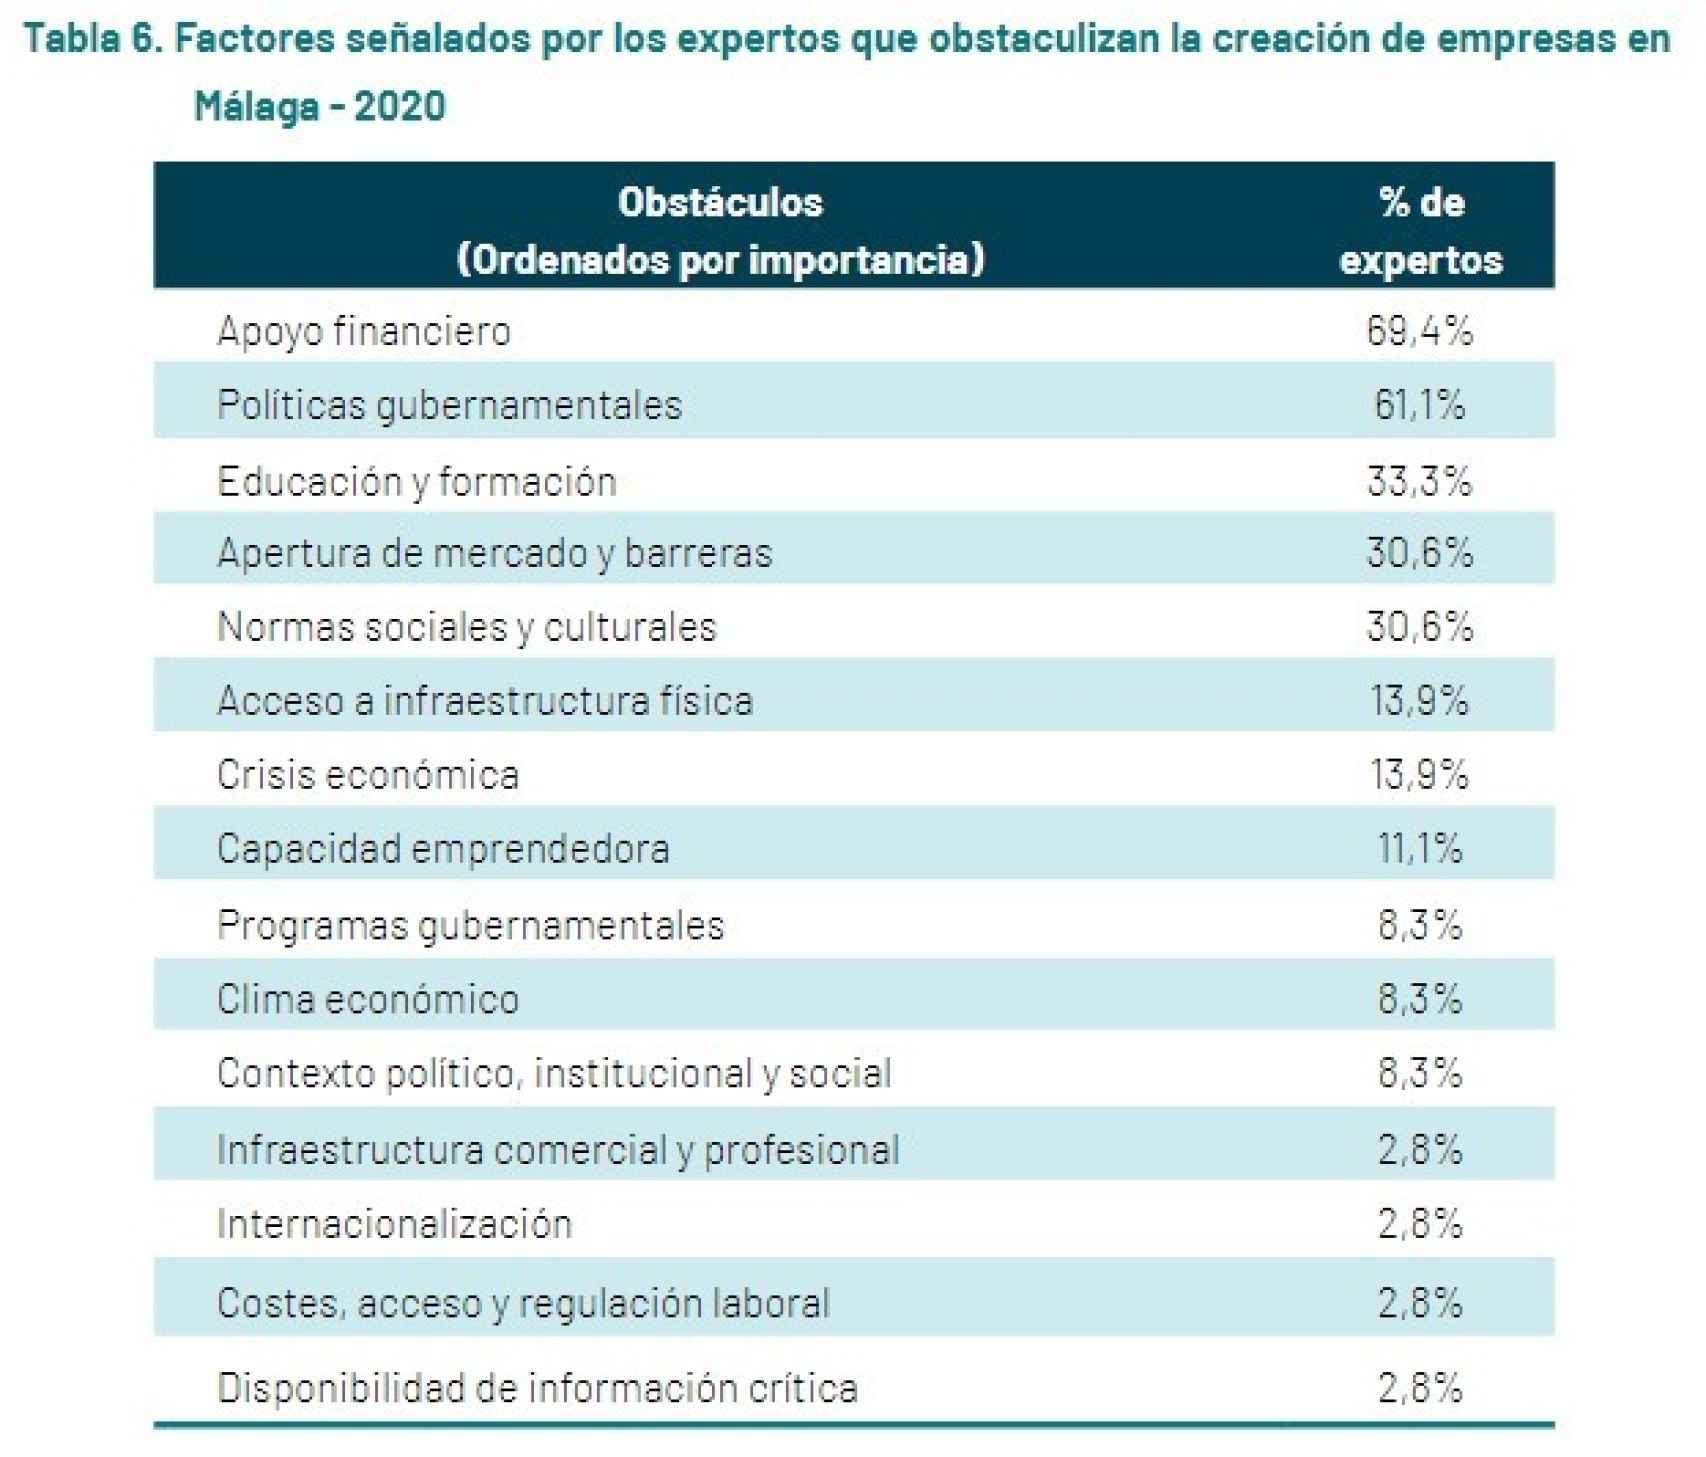 Factores señalados por los expertos que obstaculizan la creación de empresas en Málaga.